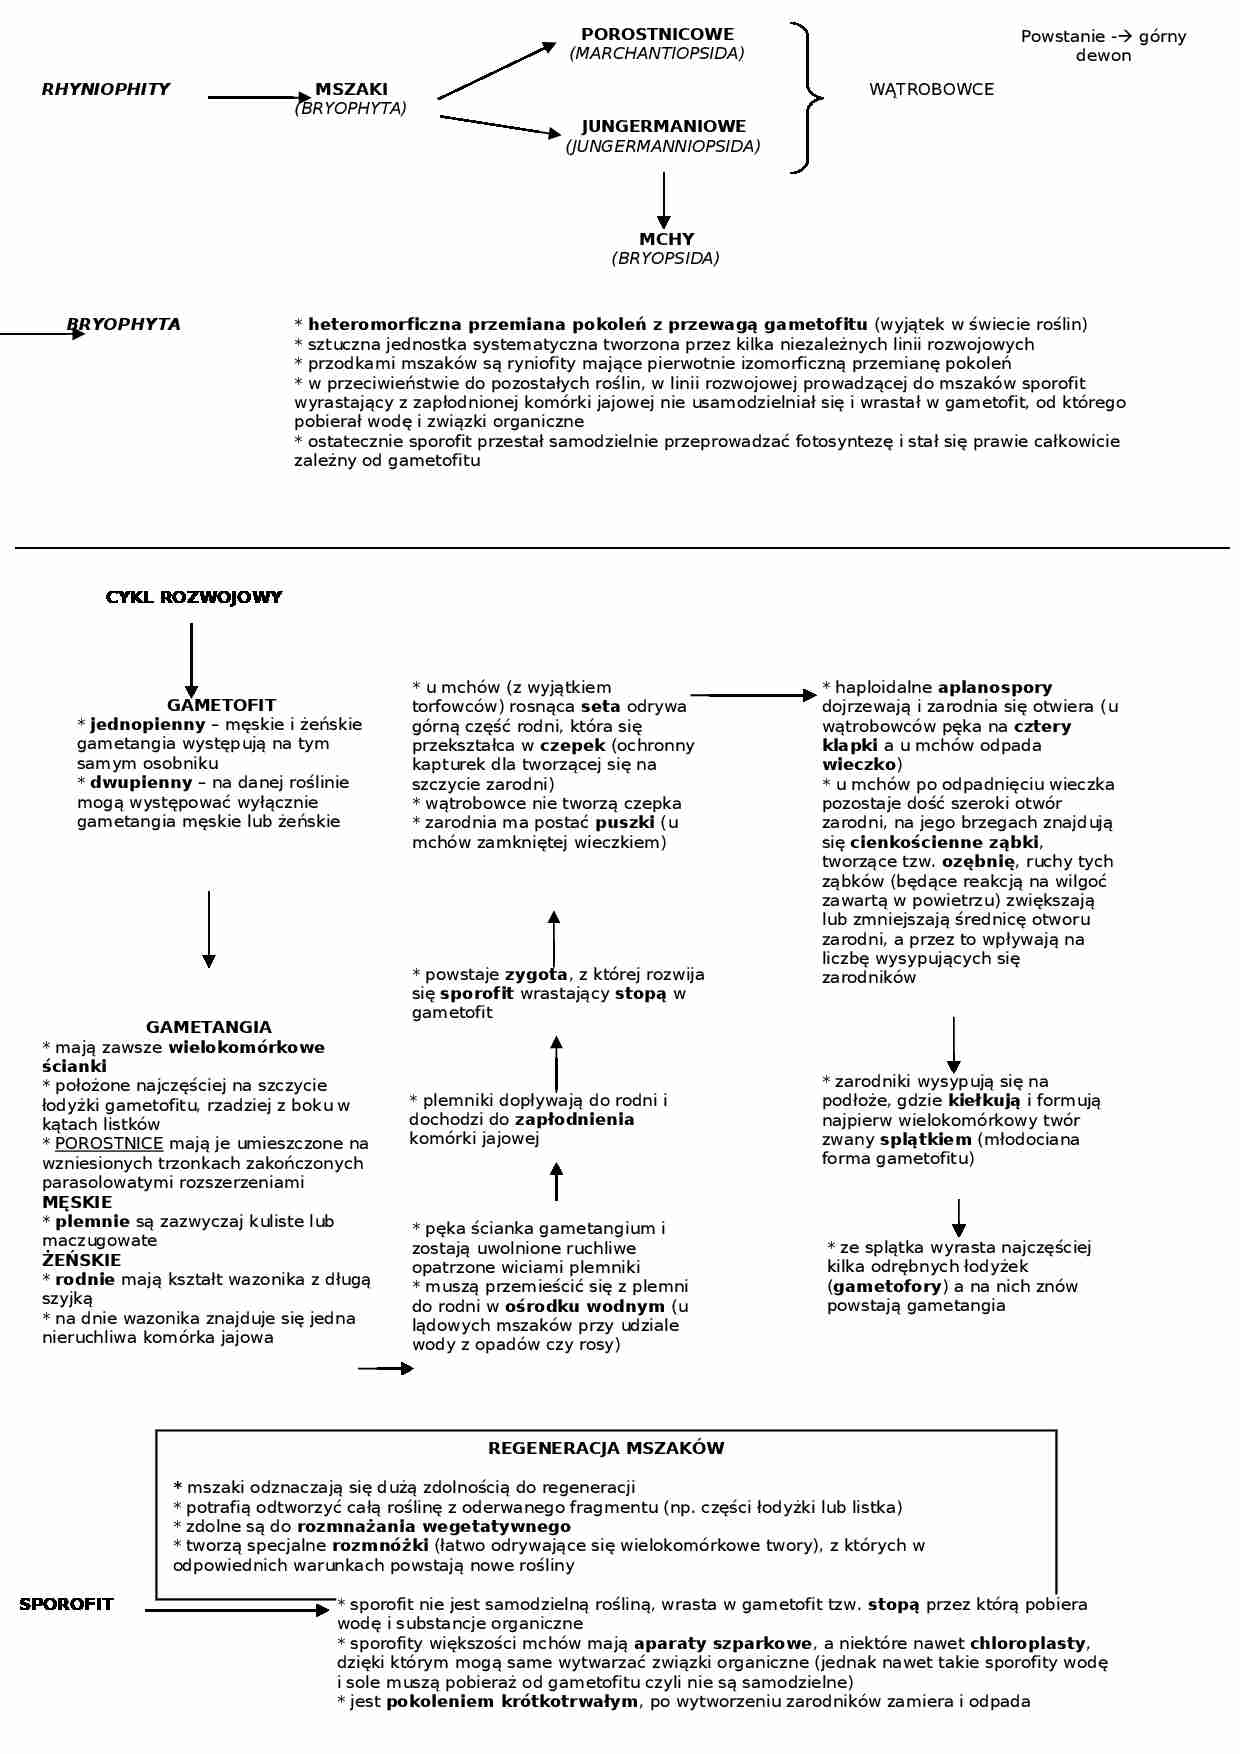 Biologia - mszaki i ich cechy - strona 1